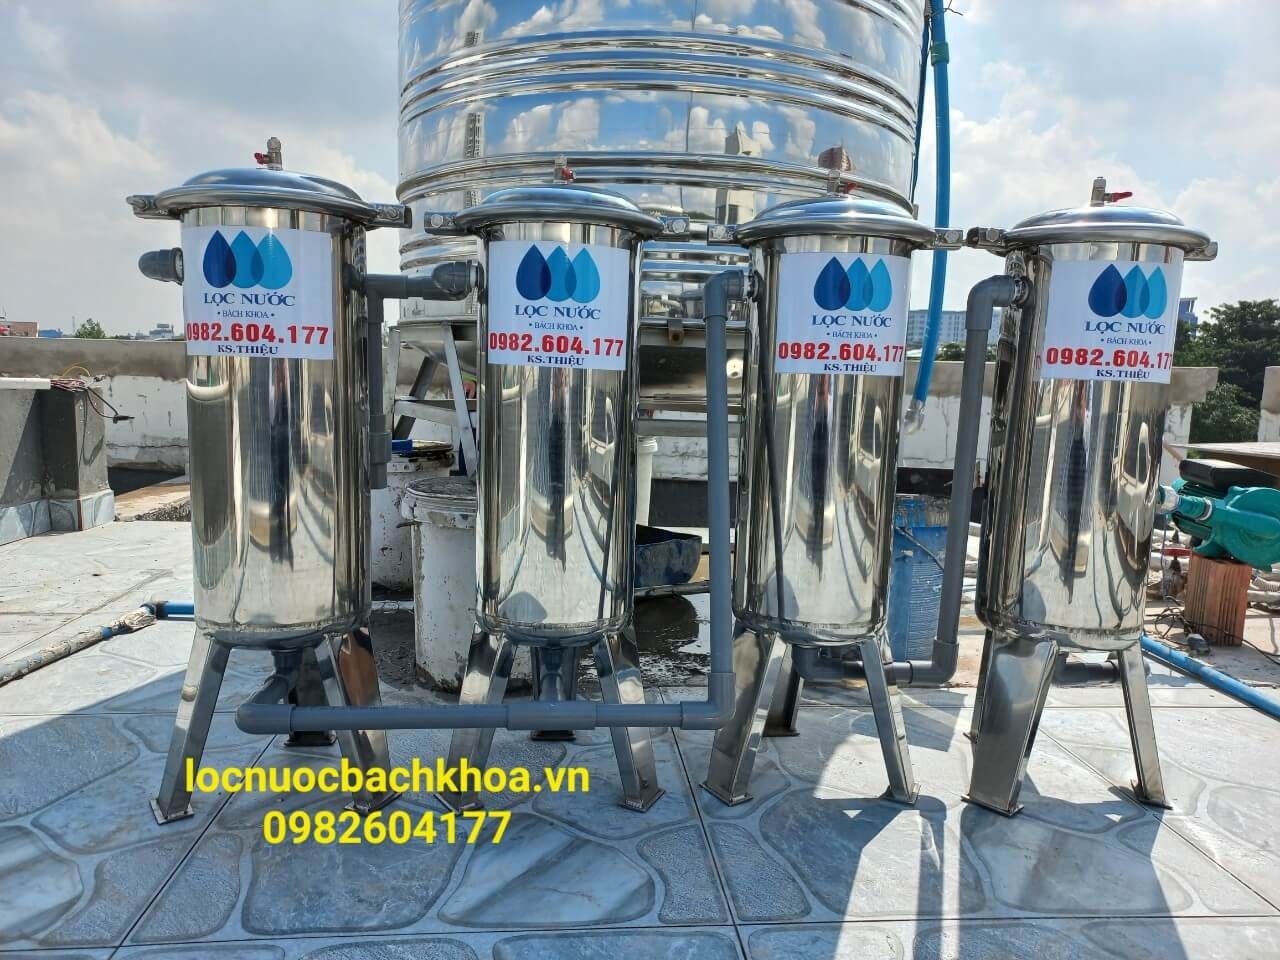 Lắp đặt bộ lọc nước đầu nguồn gồm 4 bình lọc tinh inox 304 cao cấp - Công trình quận Gò Vấp, HCM